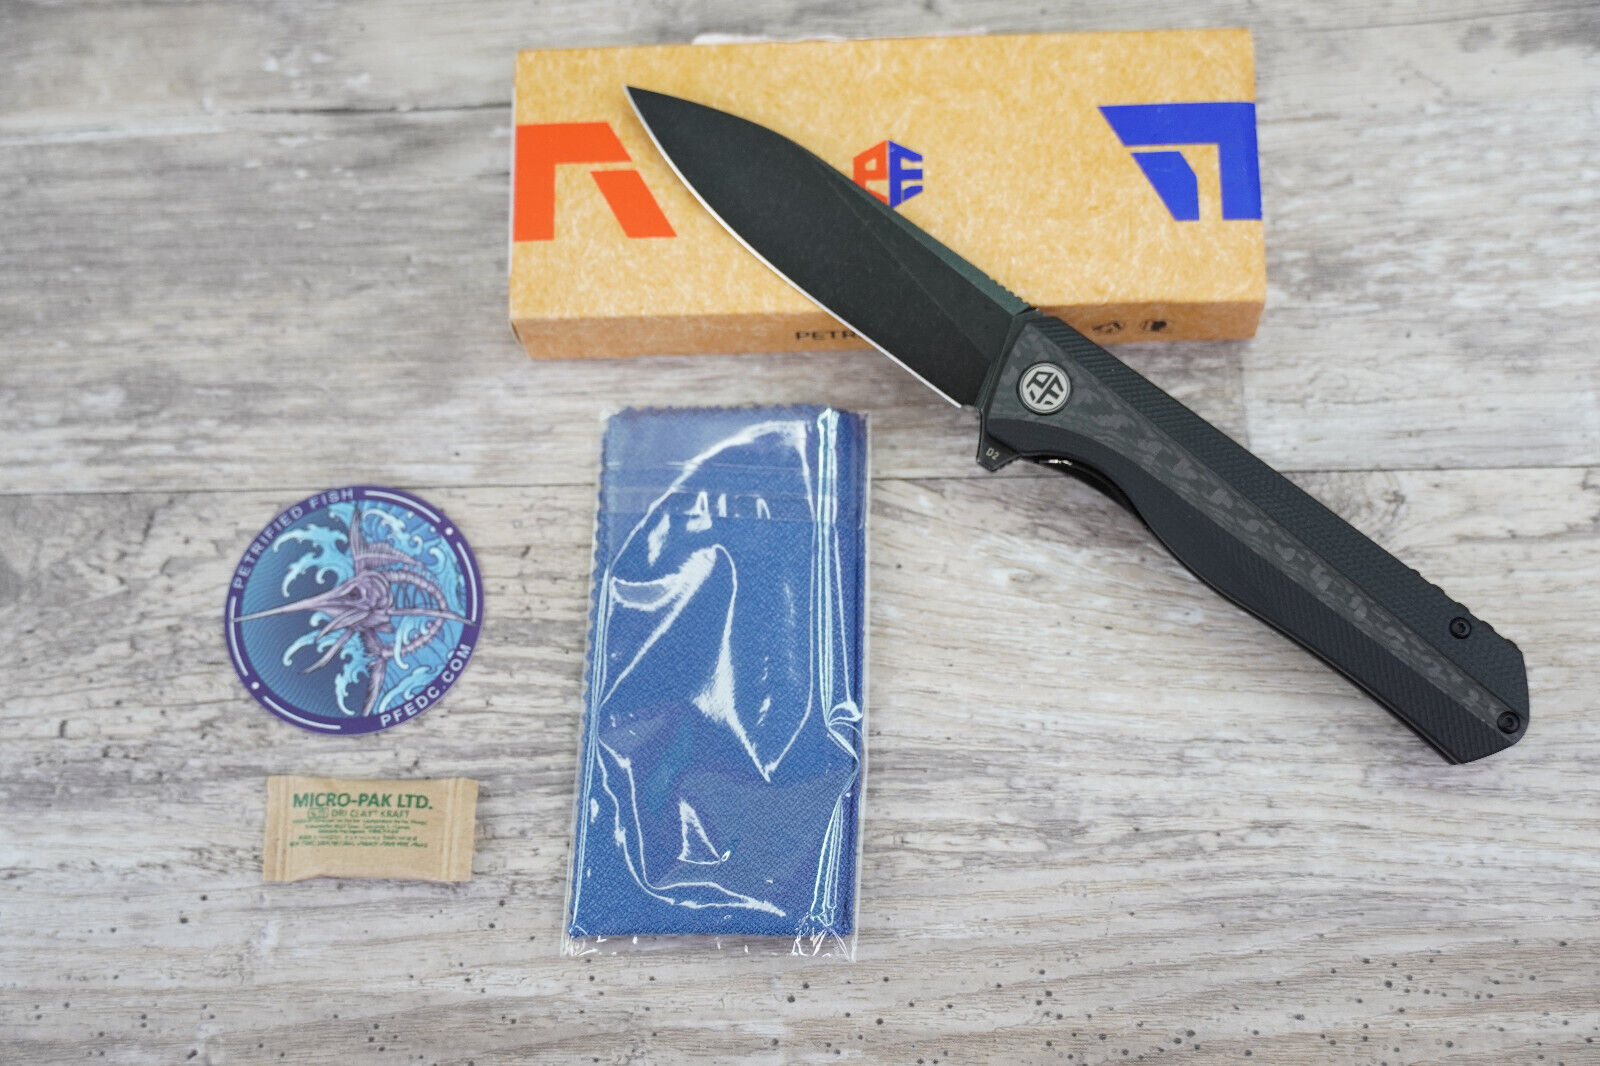 Petrified Fish 818 Black CF/G10 Handle Black Stone Washed D2 Folding Blade Knife